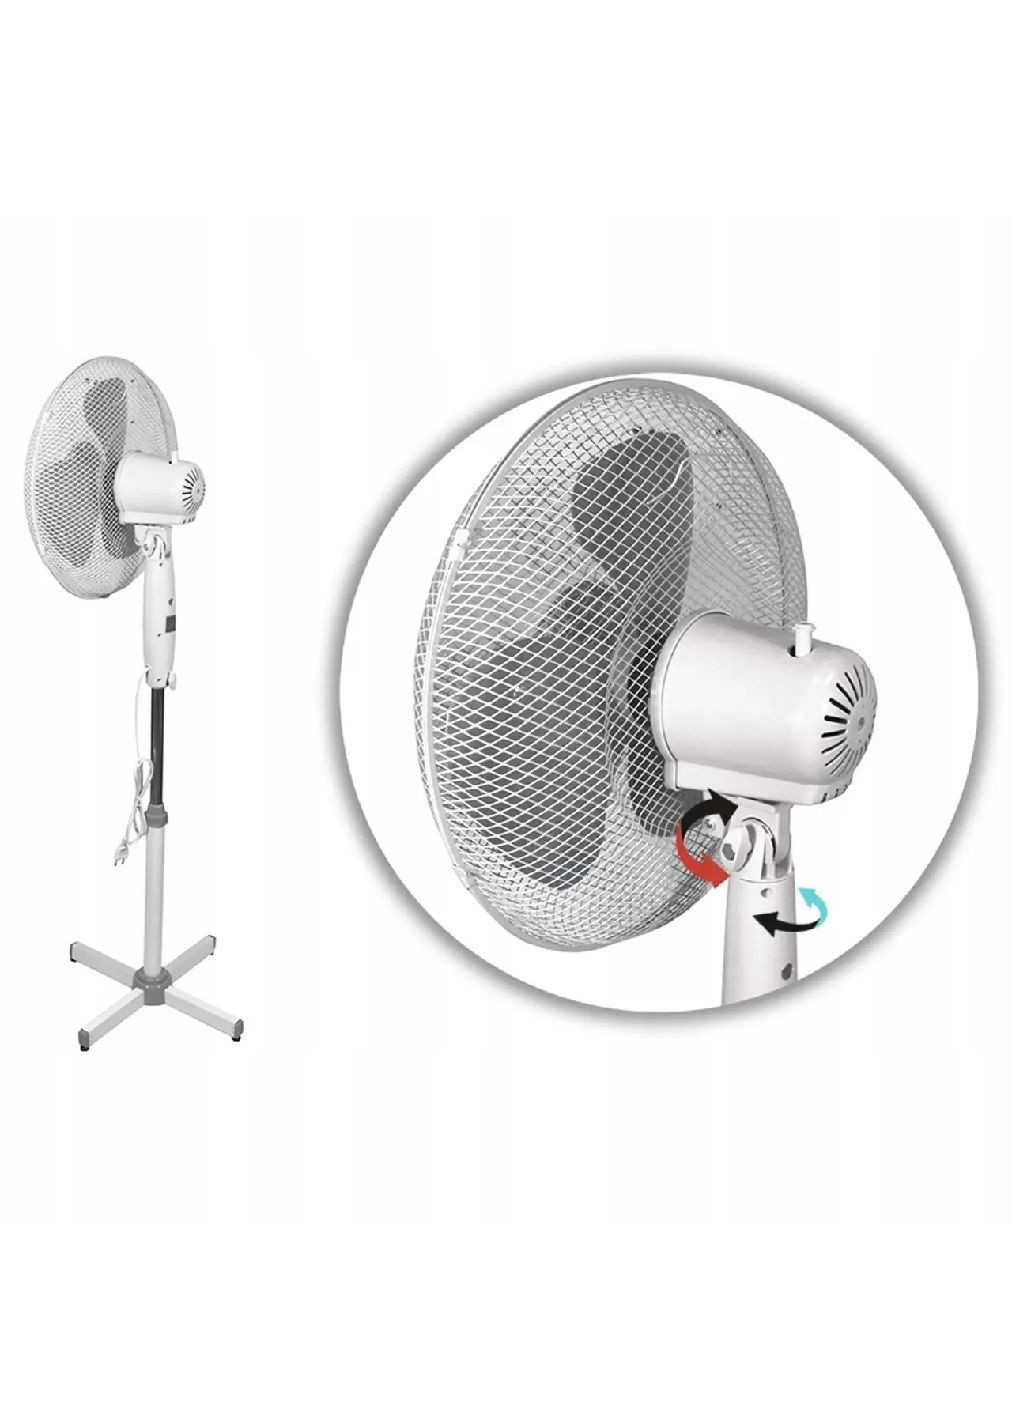 Підлоговий вентилятор зі світловим індикатором роботи захистом від перегріву трилопатевий 130х40 см (476631-Prob) Unbranded (285778328)